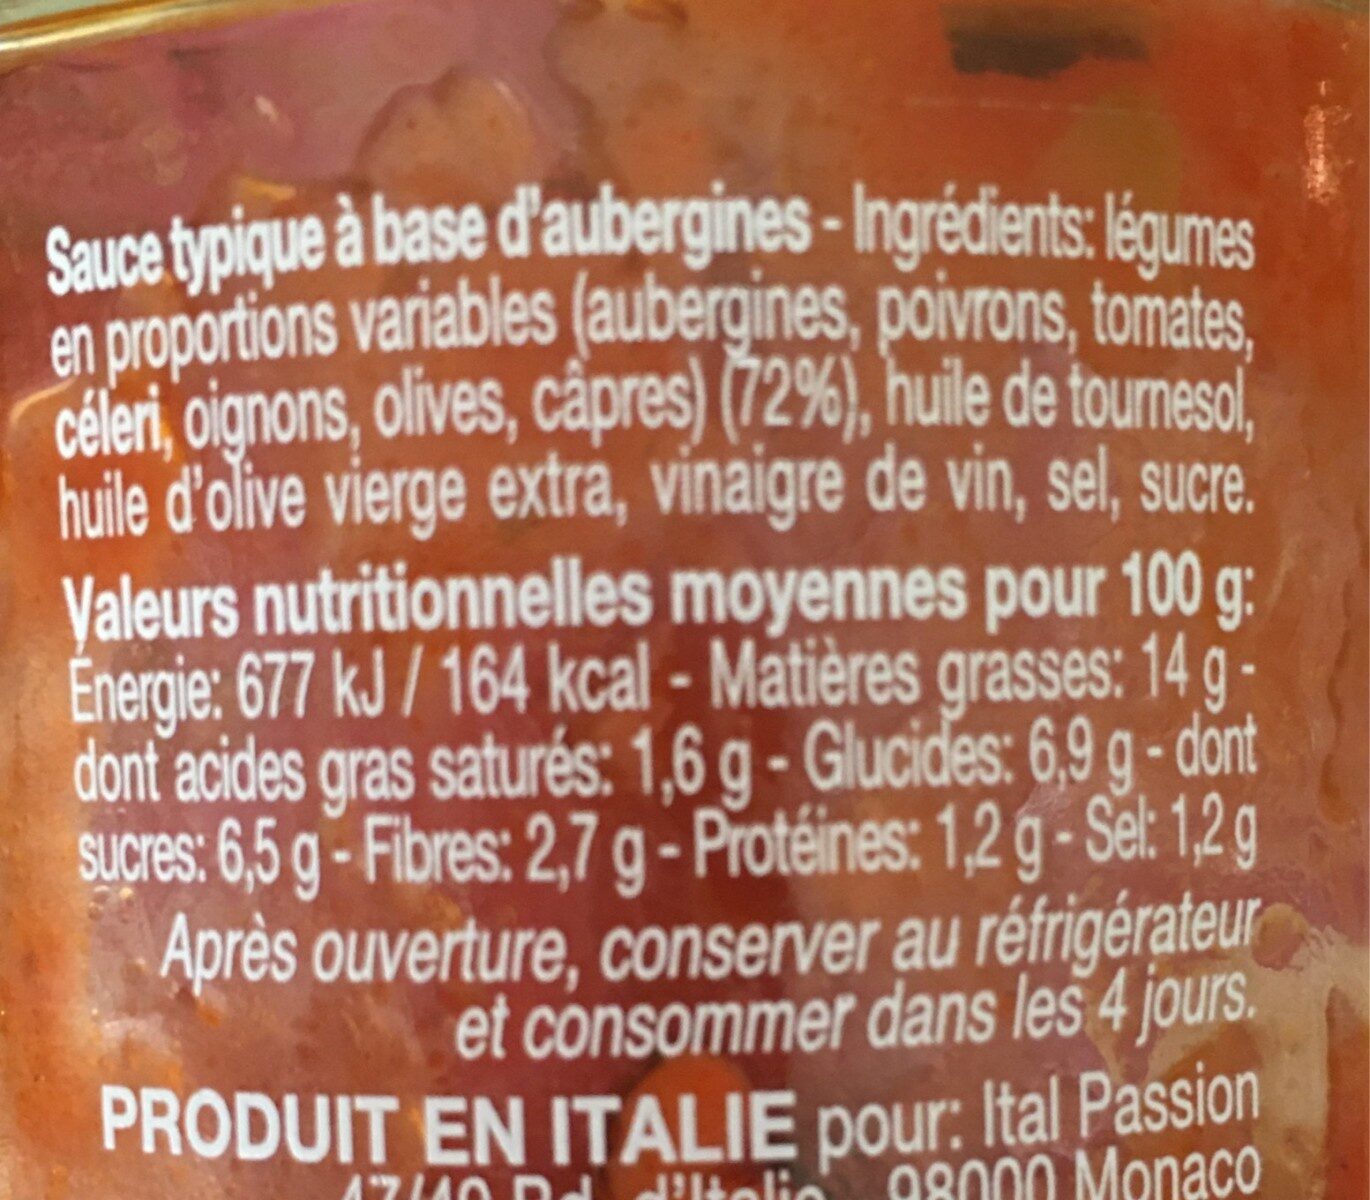 Caponata d'aubergines - Tableau nutritionnel